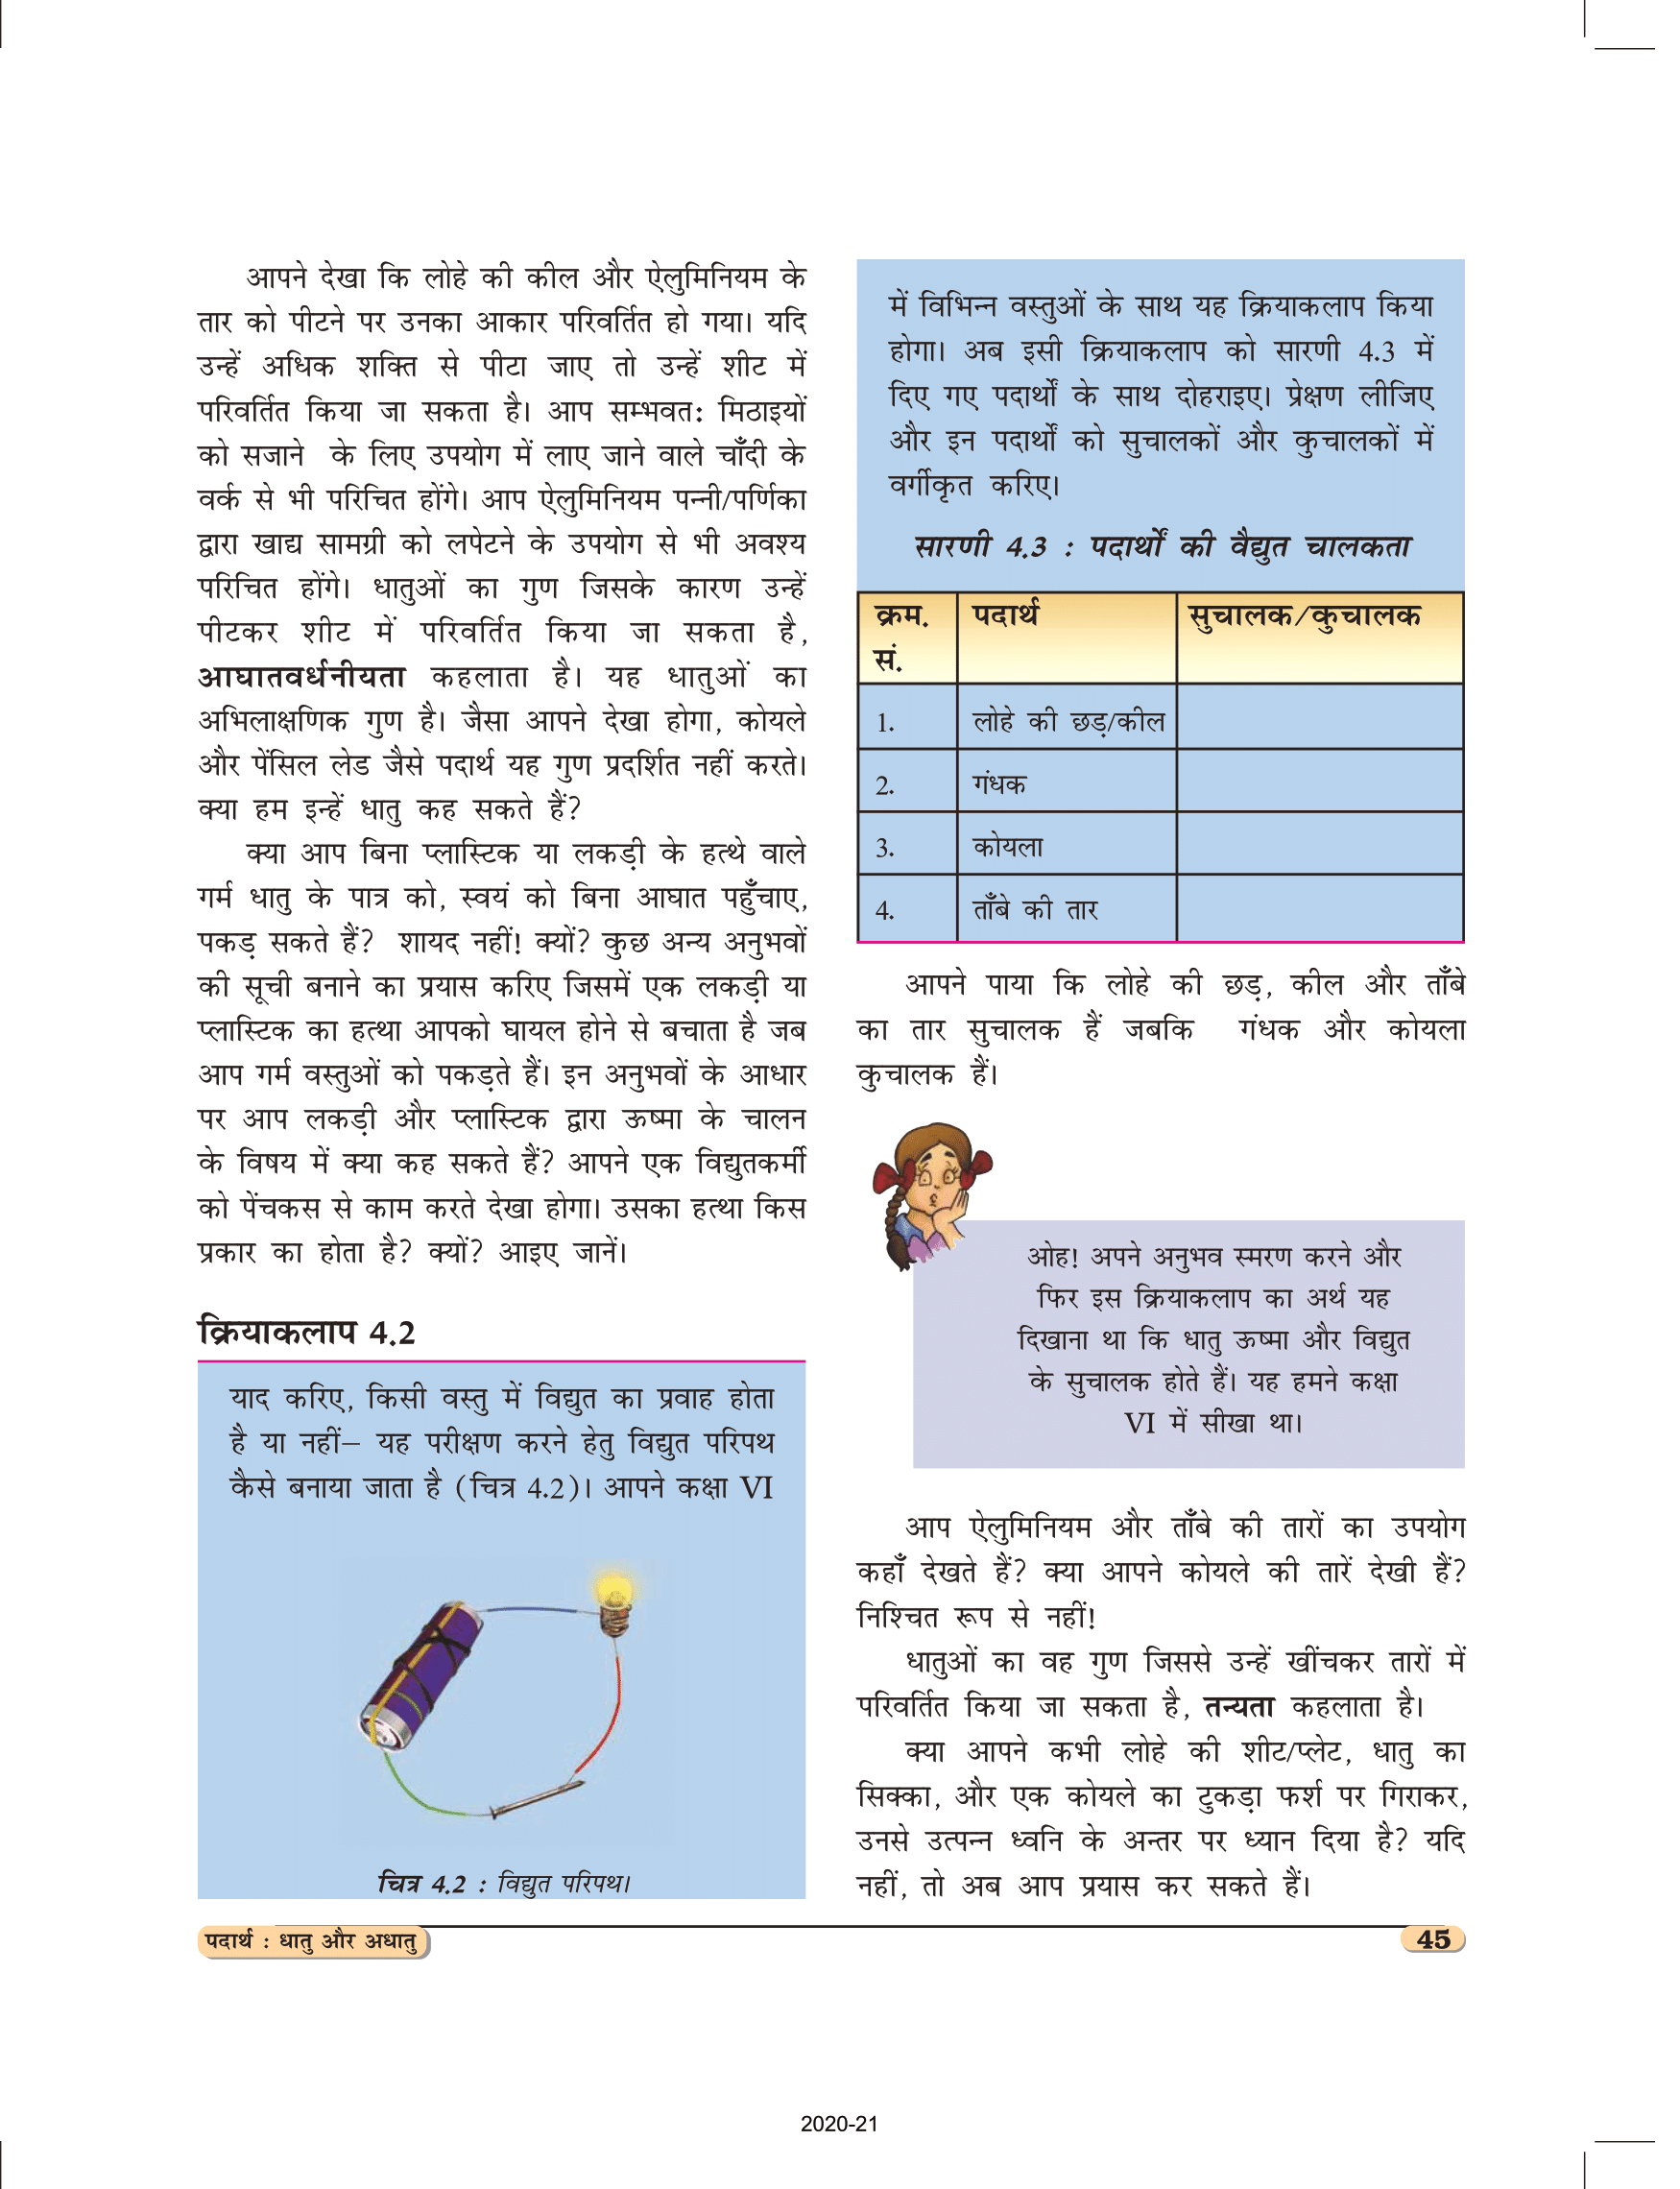 कक्षा 8 विज्ञान अध्याय 4 एनसीईआरटी की किताब